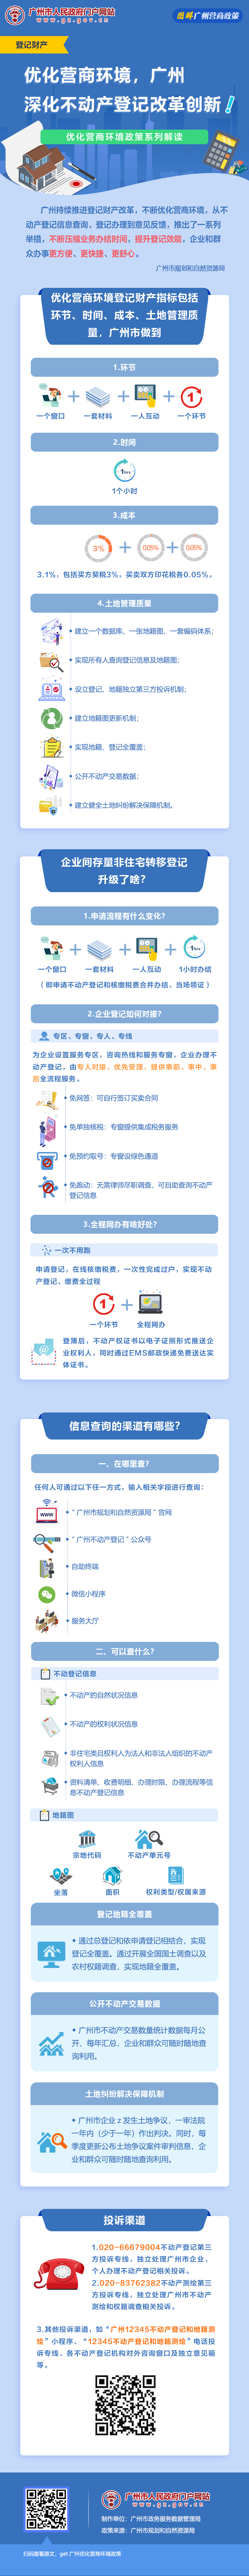 7优化营商环境，广州深化不动产登记改革创新.jpg